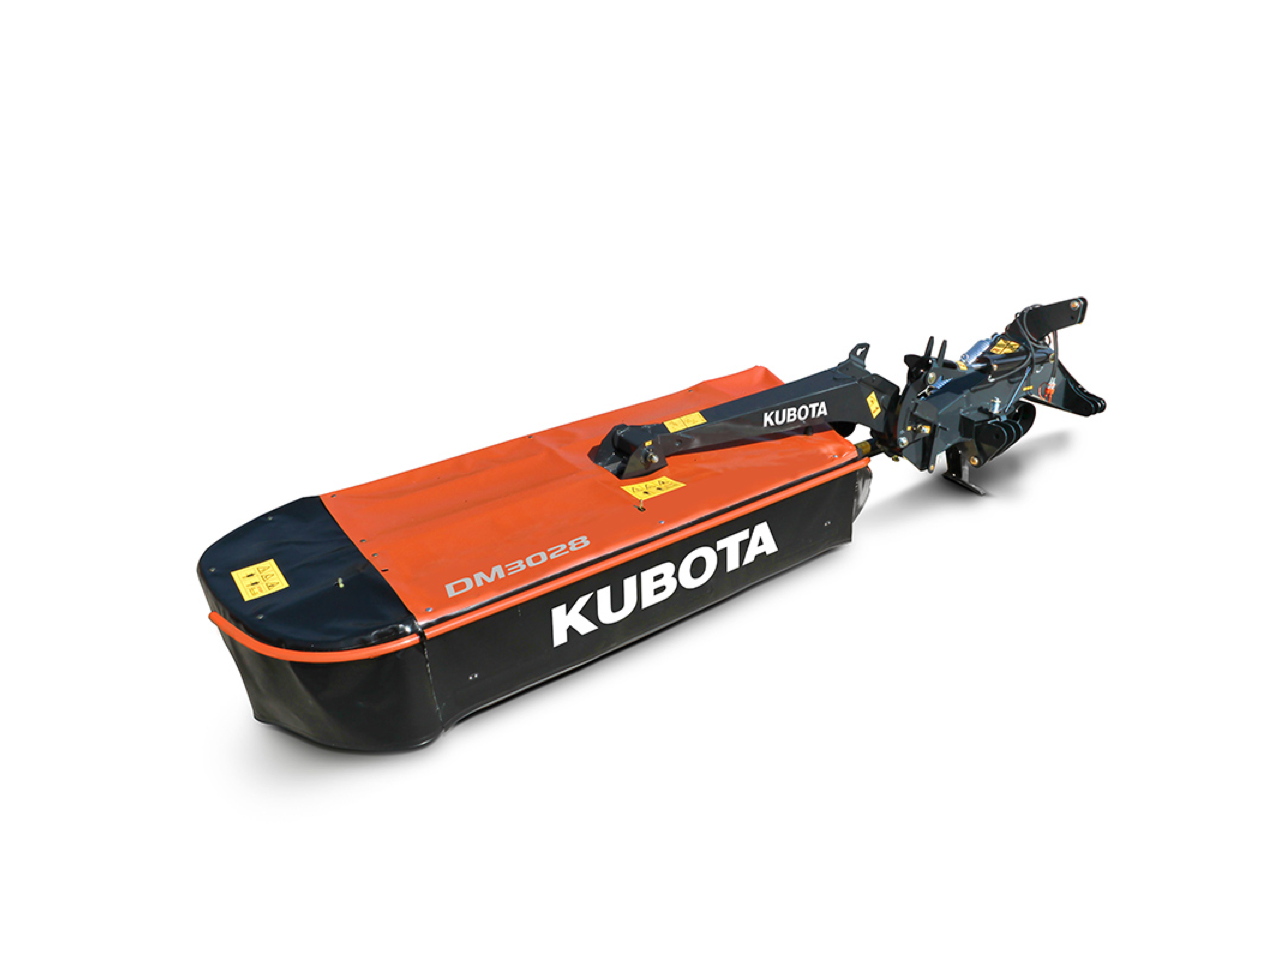 Kubota DM 3000